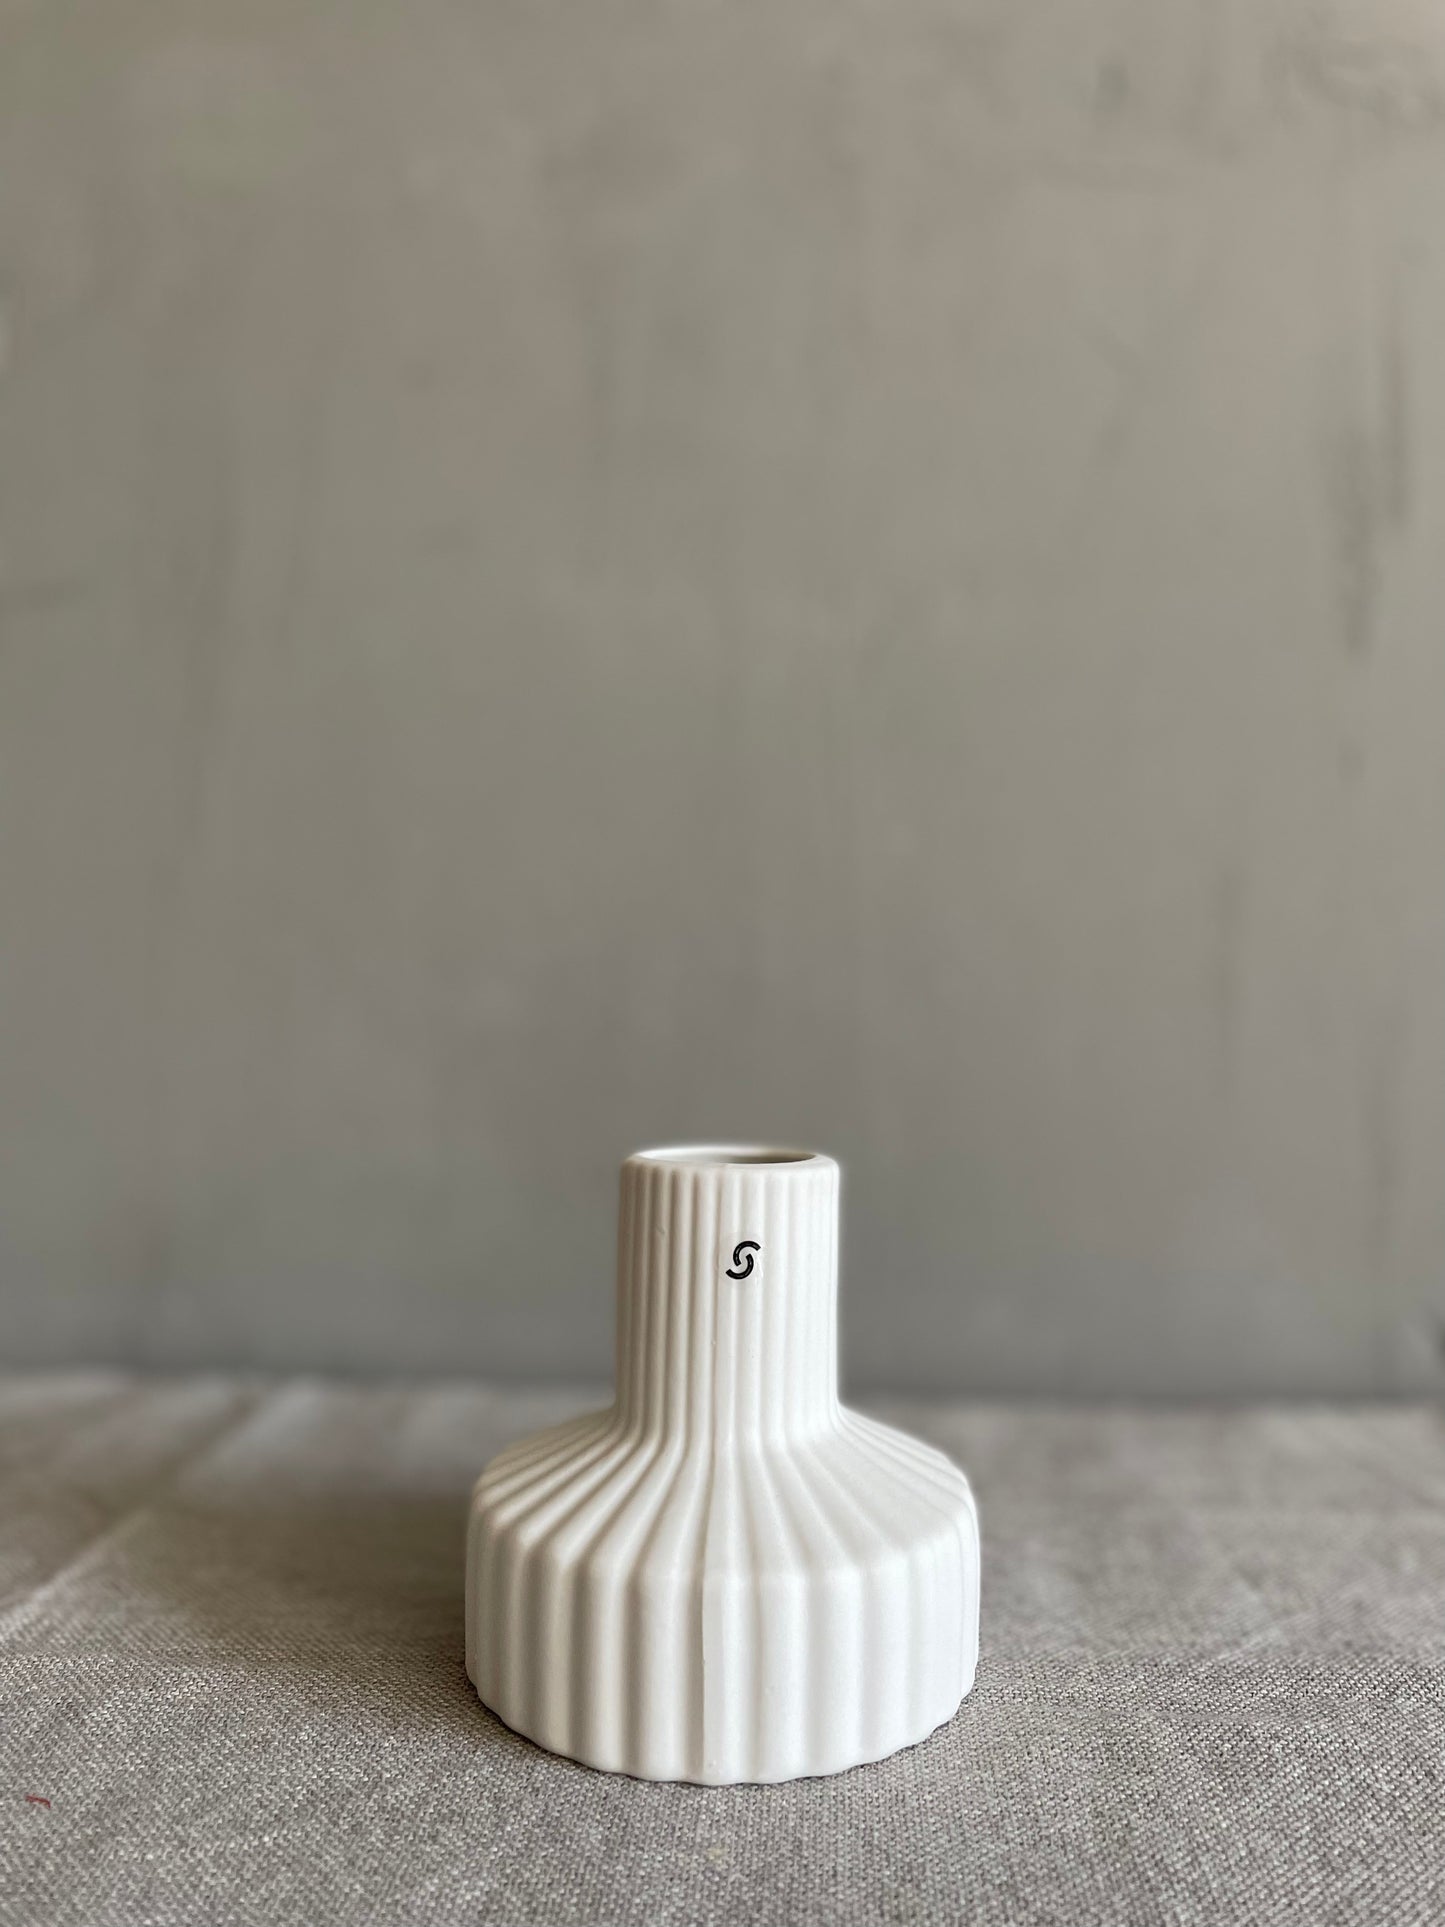 Storefactory Vase Samset  -white